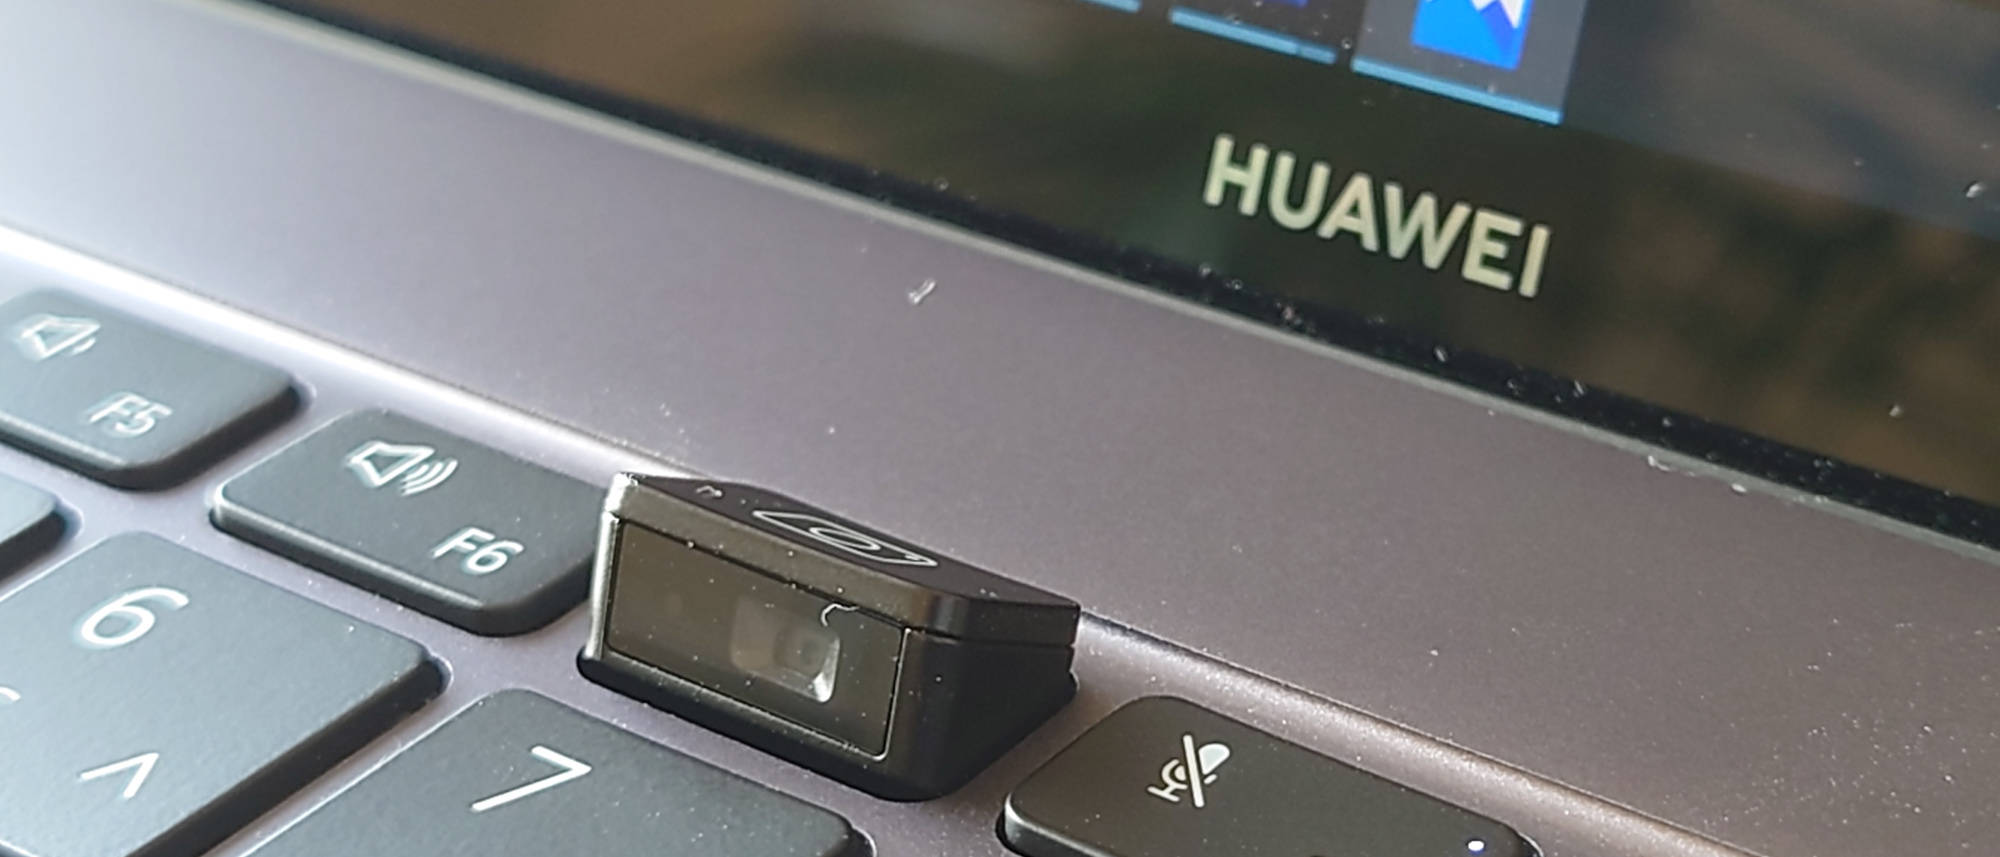 De camera van de Huawei Matebook X Pro zit in het toetsenbord weggewerkt., KVdS